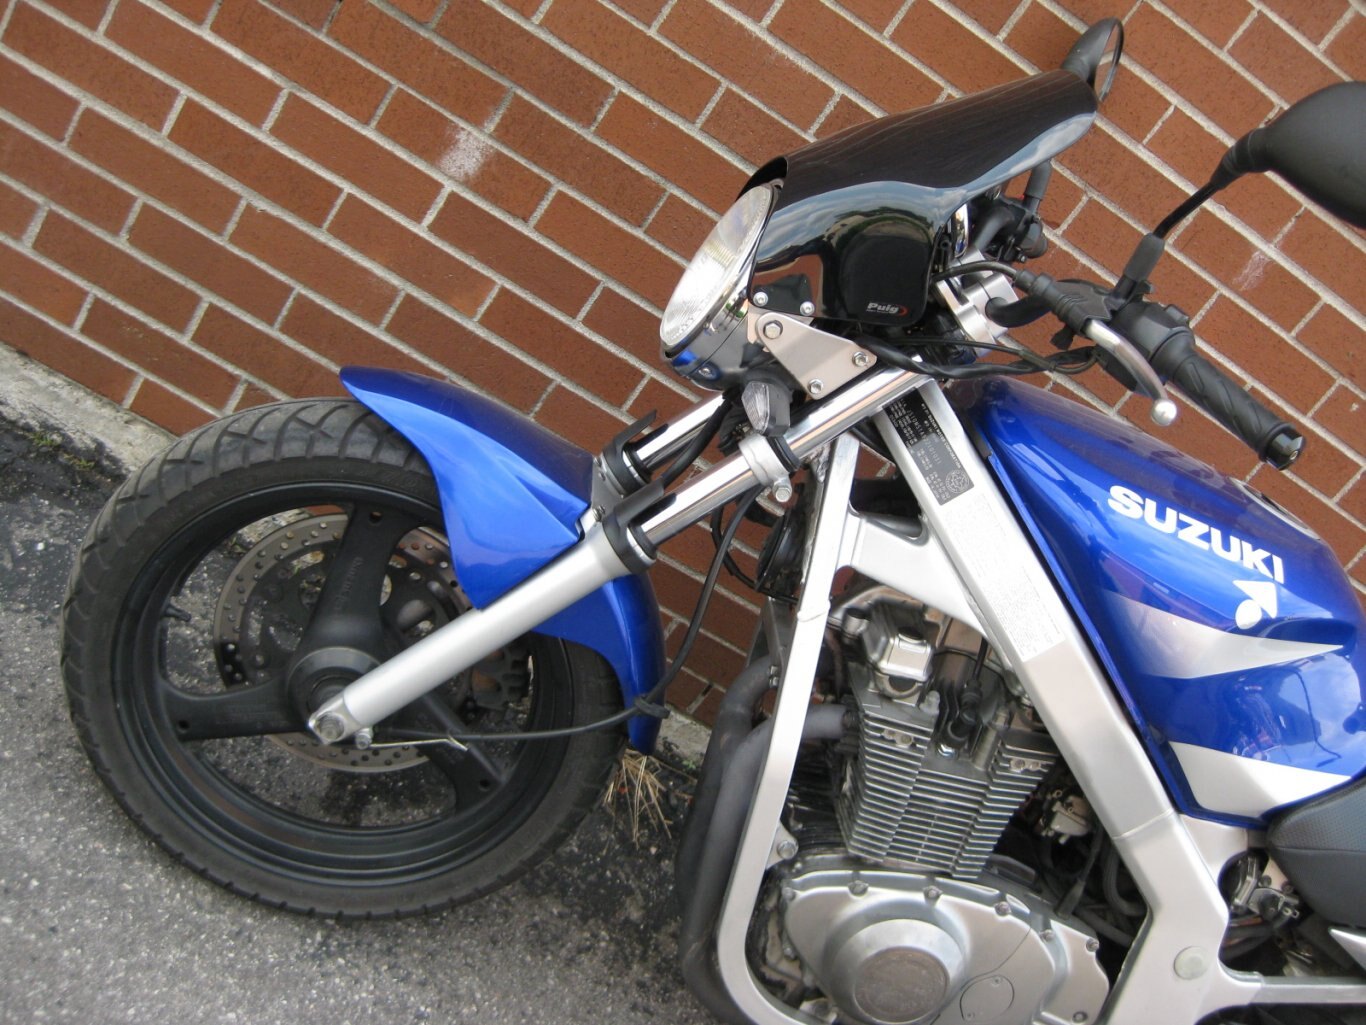 2002 Suzuki GS500